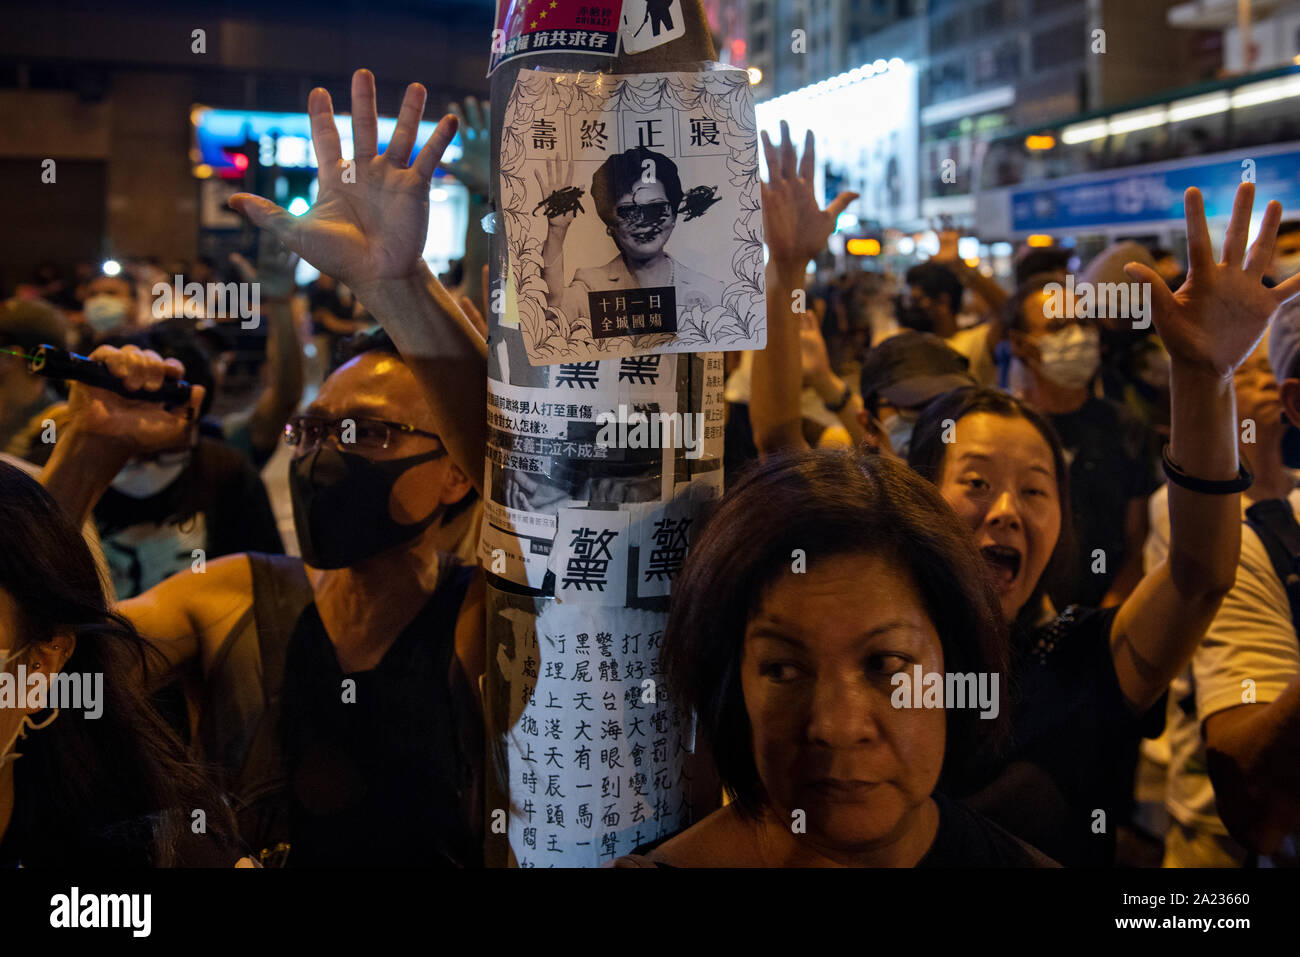 Demonstranten heben die Hand öffnen Die 5 Forderungen Demonstranten zu symbolisieren, um zu stoppen, um die Proteste am Tag vor dem Chinesischen Nationalfeiertag. Pro-Democracy Demonstrant wurden protestieren in Hongkong für die letzten Monate fordert, dass die Regierung ihre Forderungen einschließlich der Einrichtung einer unabhängigen Untersuchung durch die Polizei und Machtmissbrauch in den vergangenen Monaten Protest in Hongkong, die auch für das allgemeine Wahlrecht zu erfüllen. Stockfoto